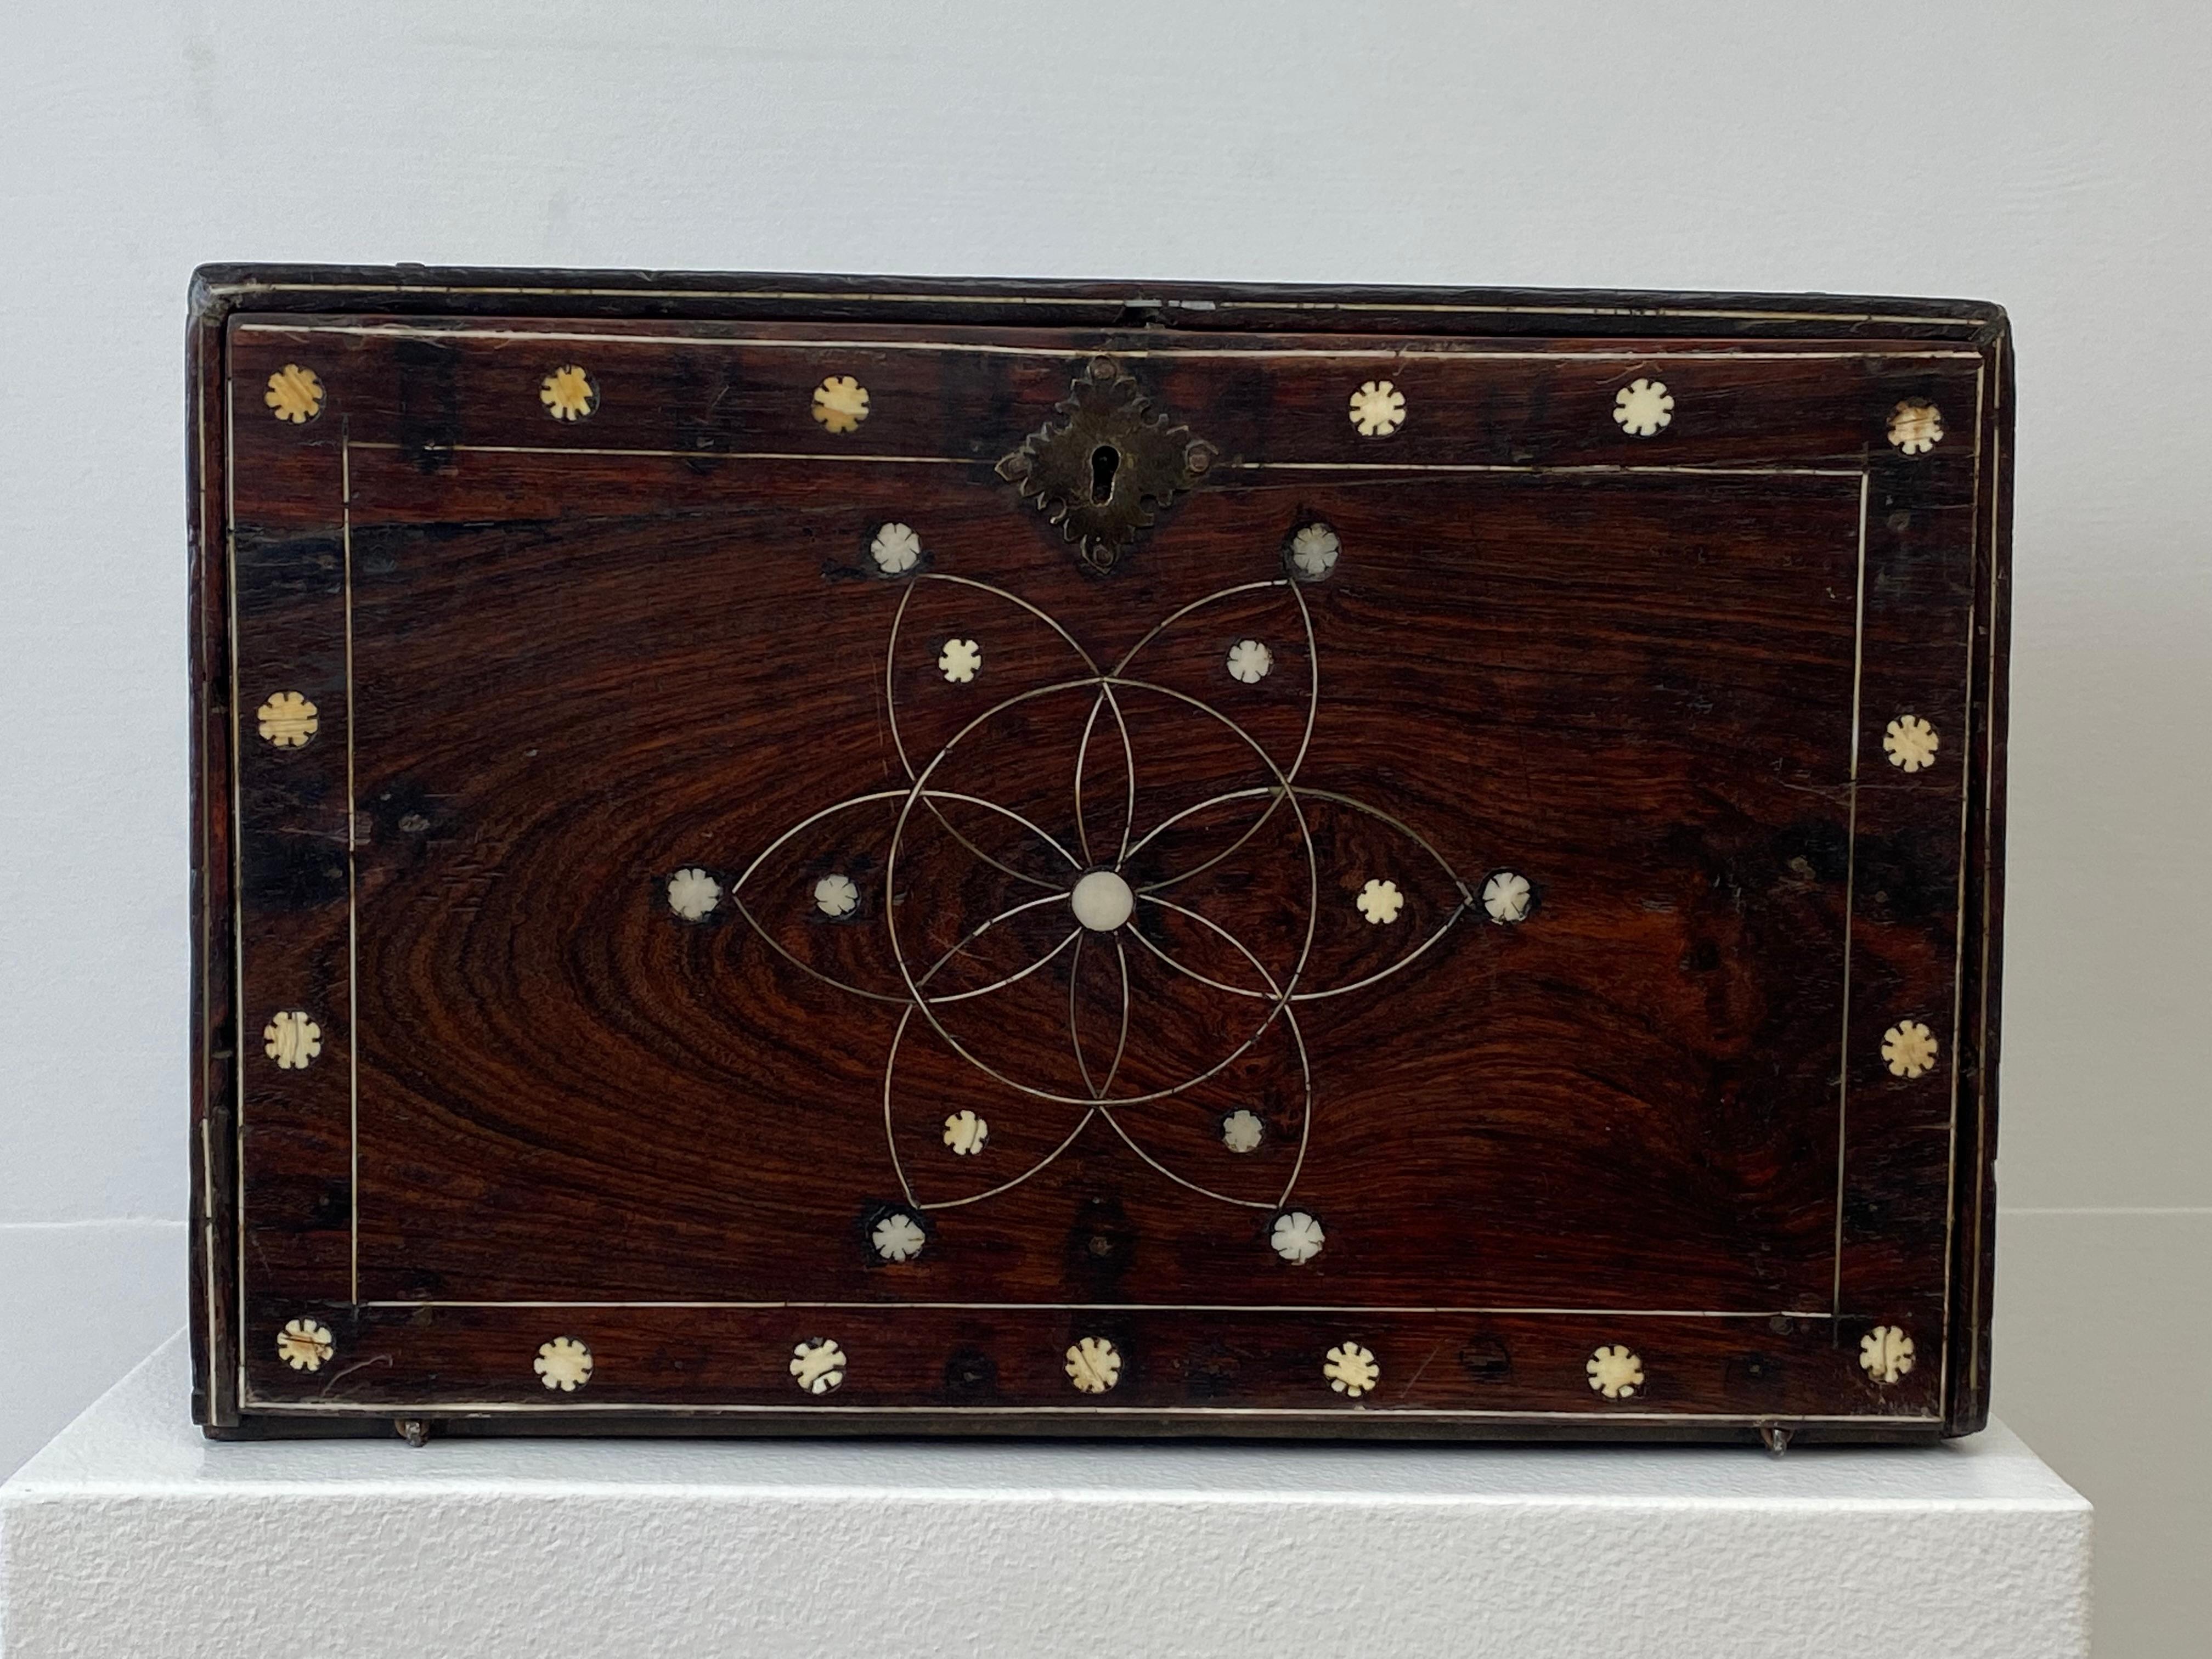 Außergewöhnlicher indo-portugiesischer Tischschrank aus dem 17. Jahrhundert,
Der seltene Schrank ist in einem sehr guten Zustand, hat eine aufklappbare Front und verfügt über 8 Schubladen, Messingknöpfe und -griffe.
Das Palisanderholz und die